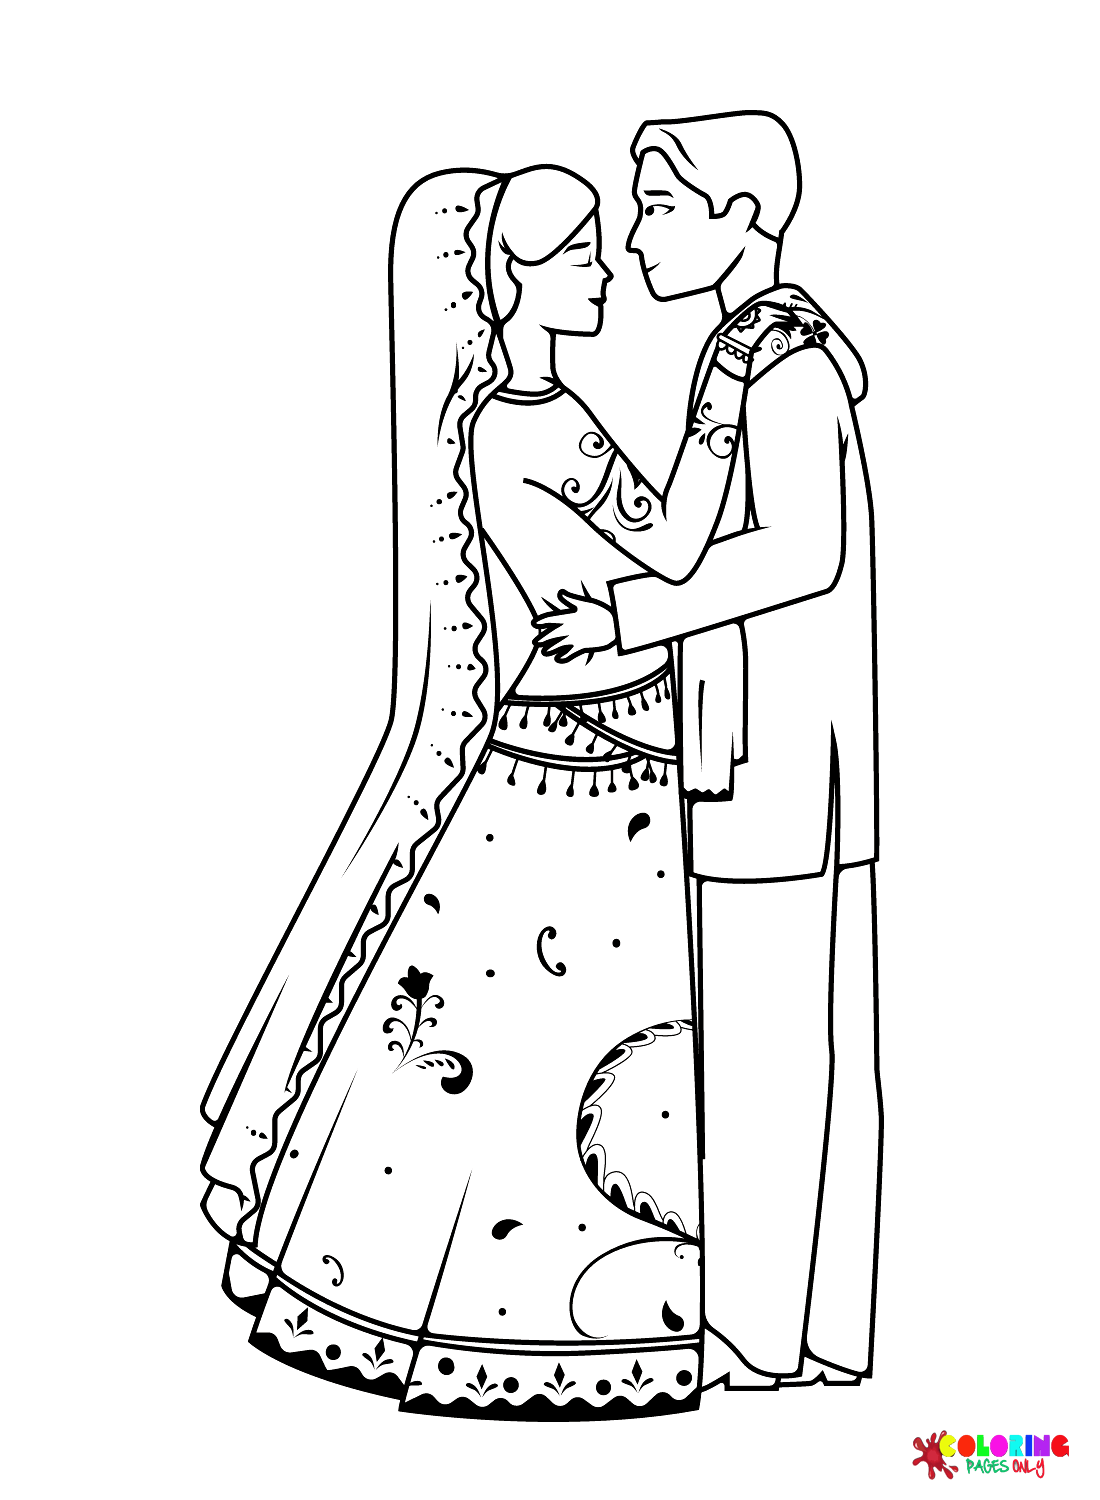 Immagini della sposa e dello sposo da Sposa e sposo